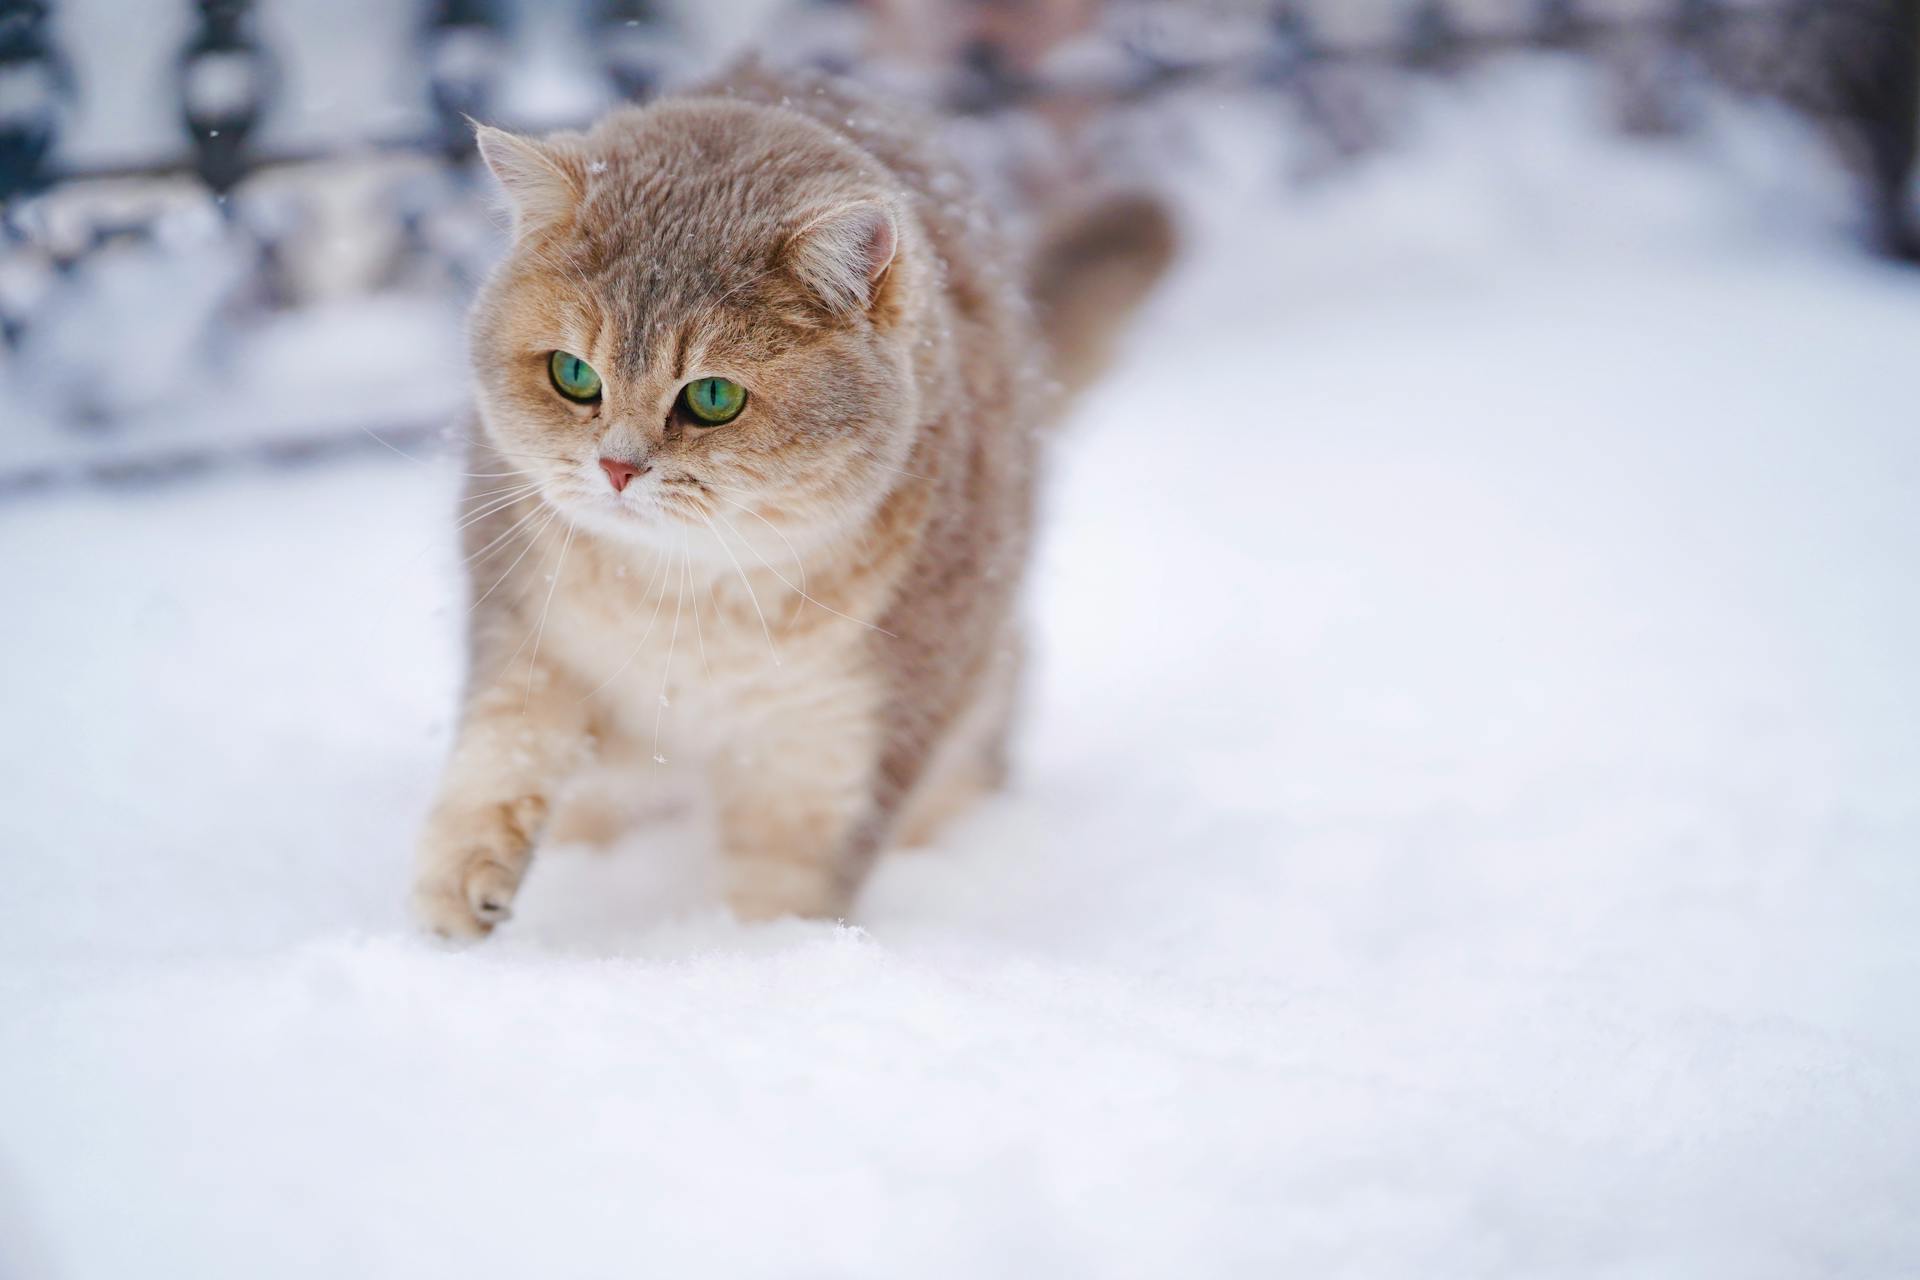 An outdoor cat exploring a snowy garden